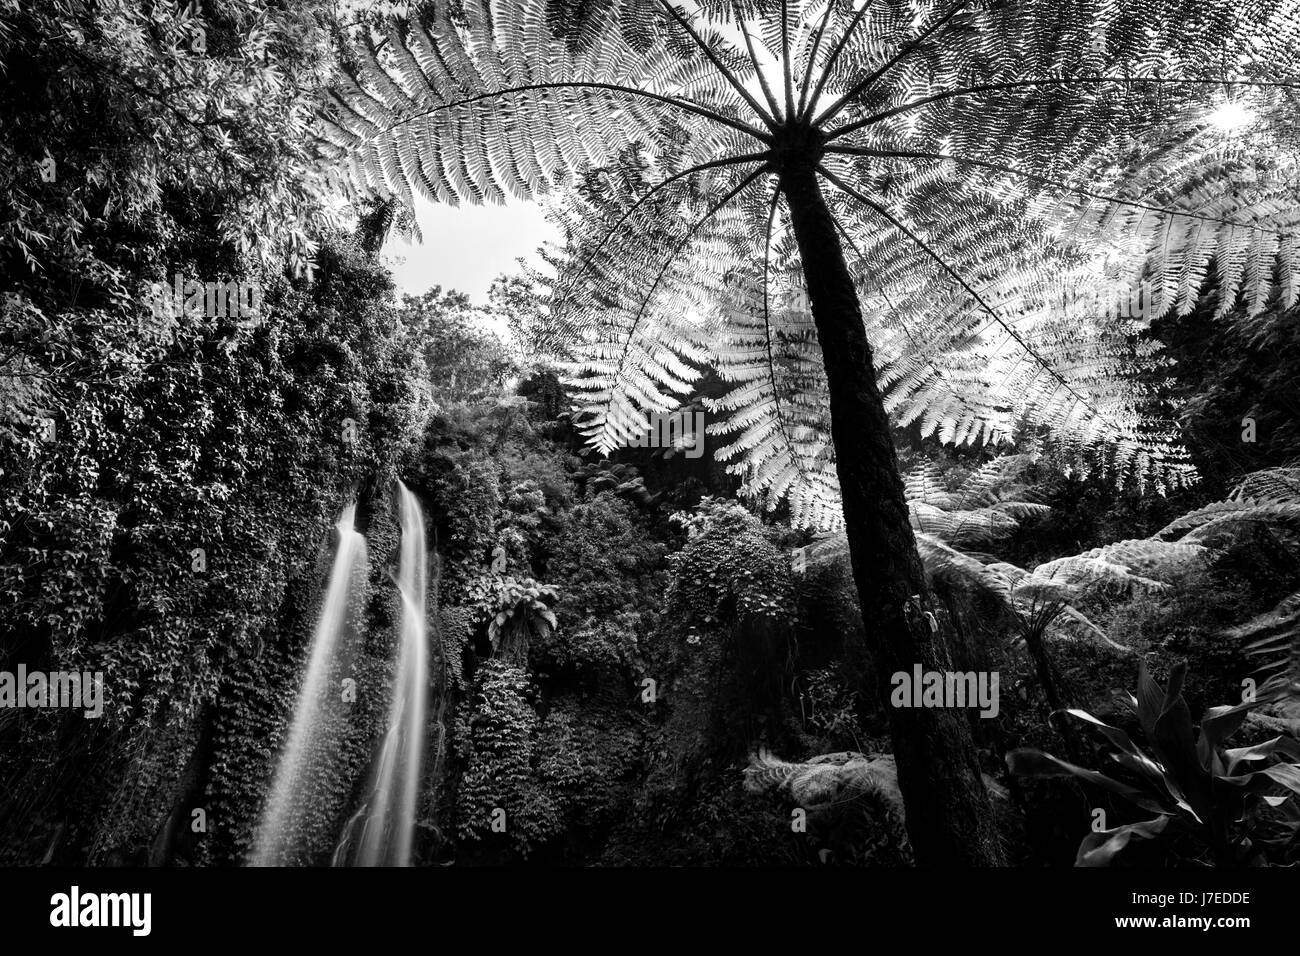 Longue exposition de l'image Jumog avec cascade fougère arborescente primitive tourné à partir d'une distance avec l'aide d'une longue exposition de la jungle environnante pour l'effet technique Banque D'Images